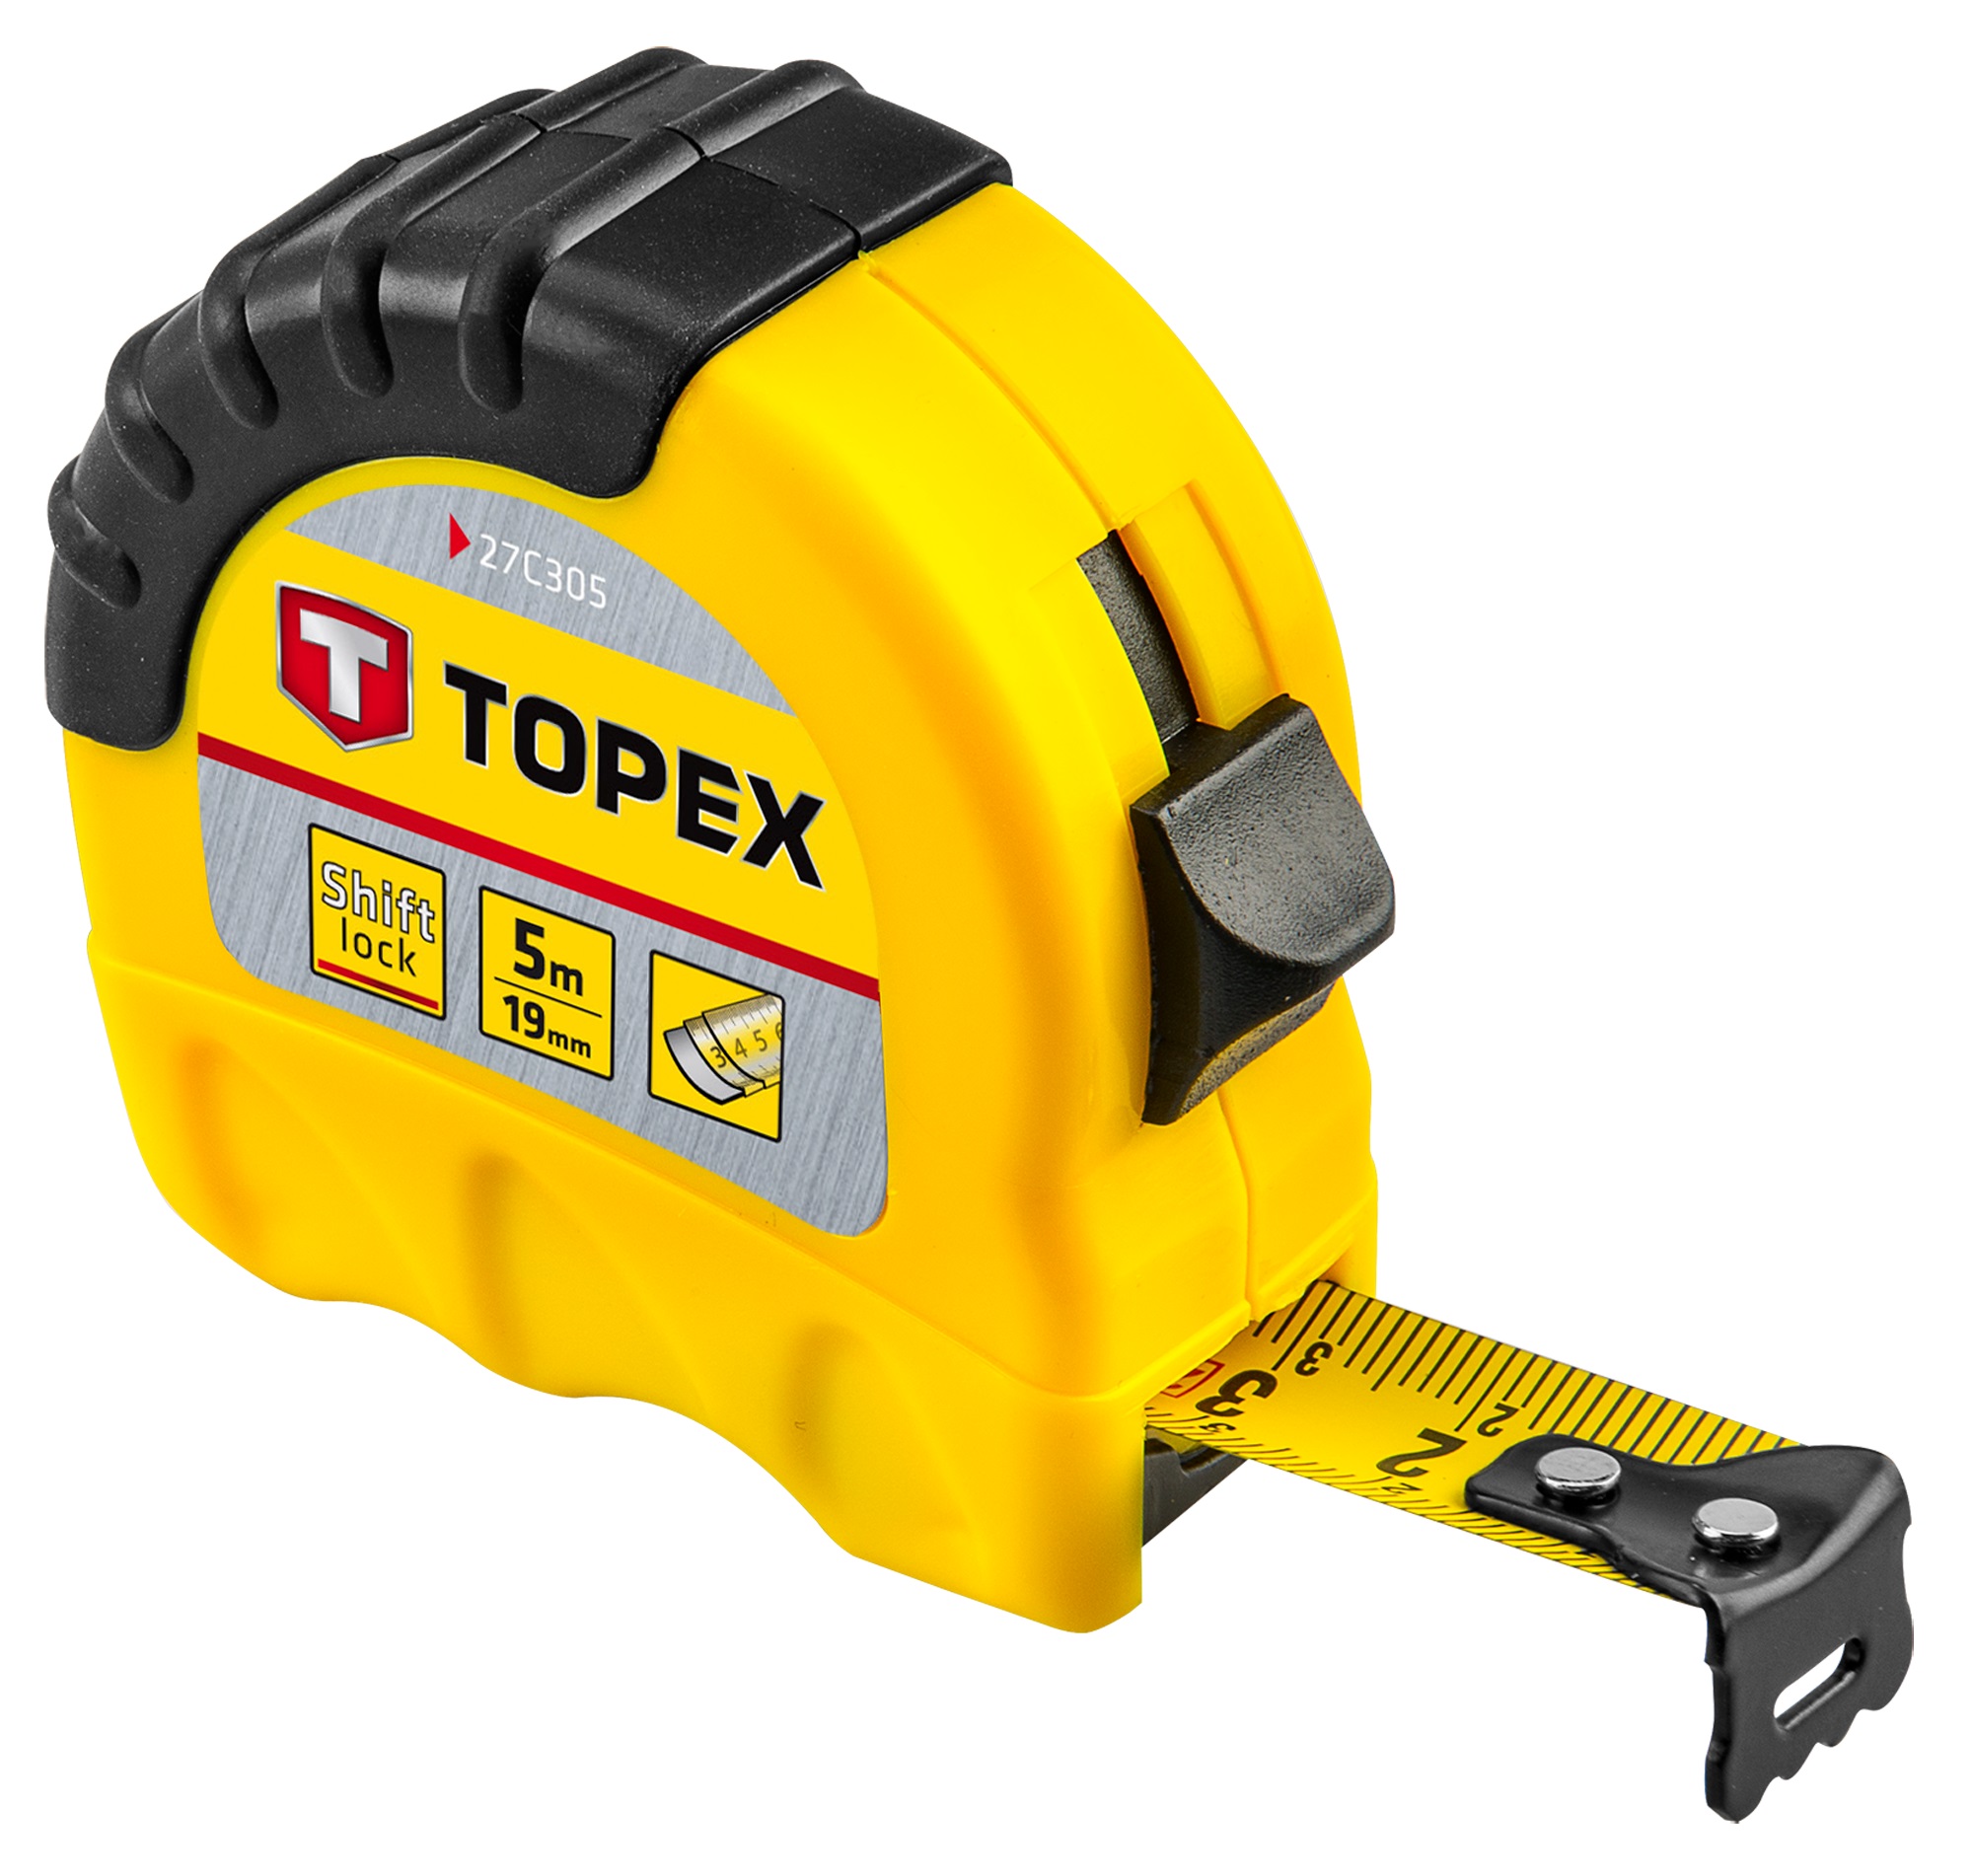 Інструкція рулетка Topex 27C305